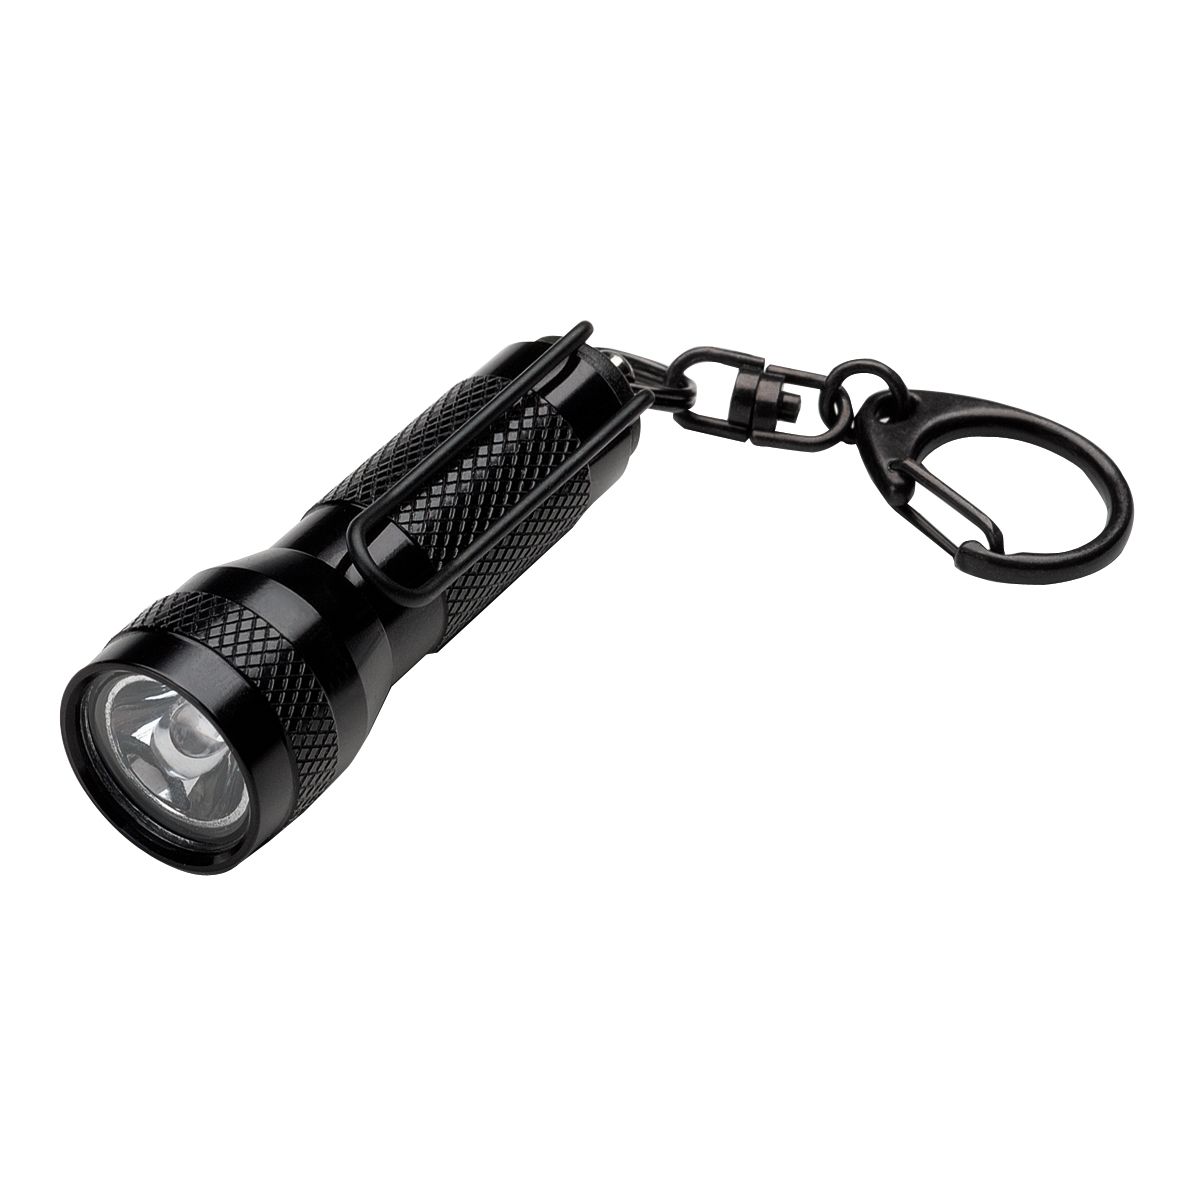 Key-Mate(R) LED Flashlight - Black w/ White LED